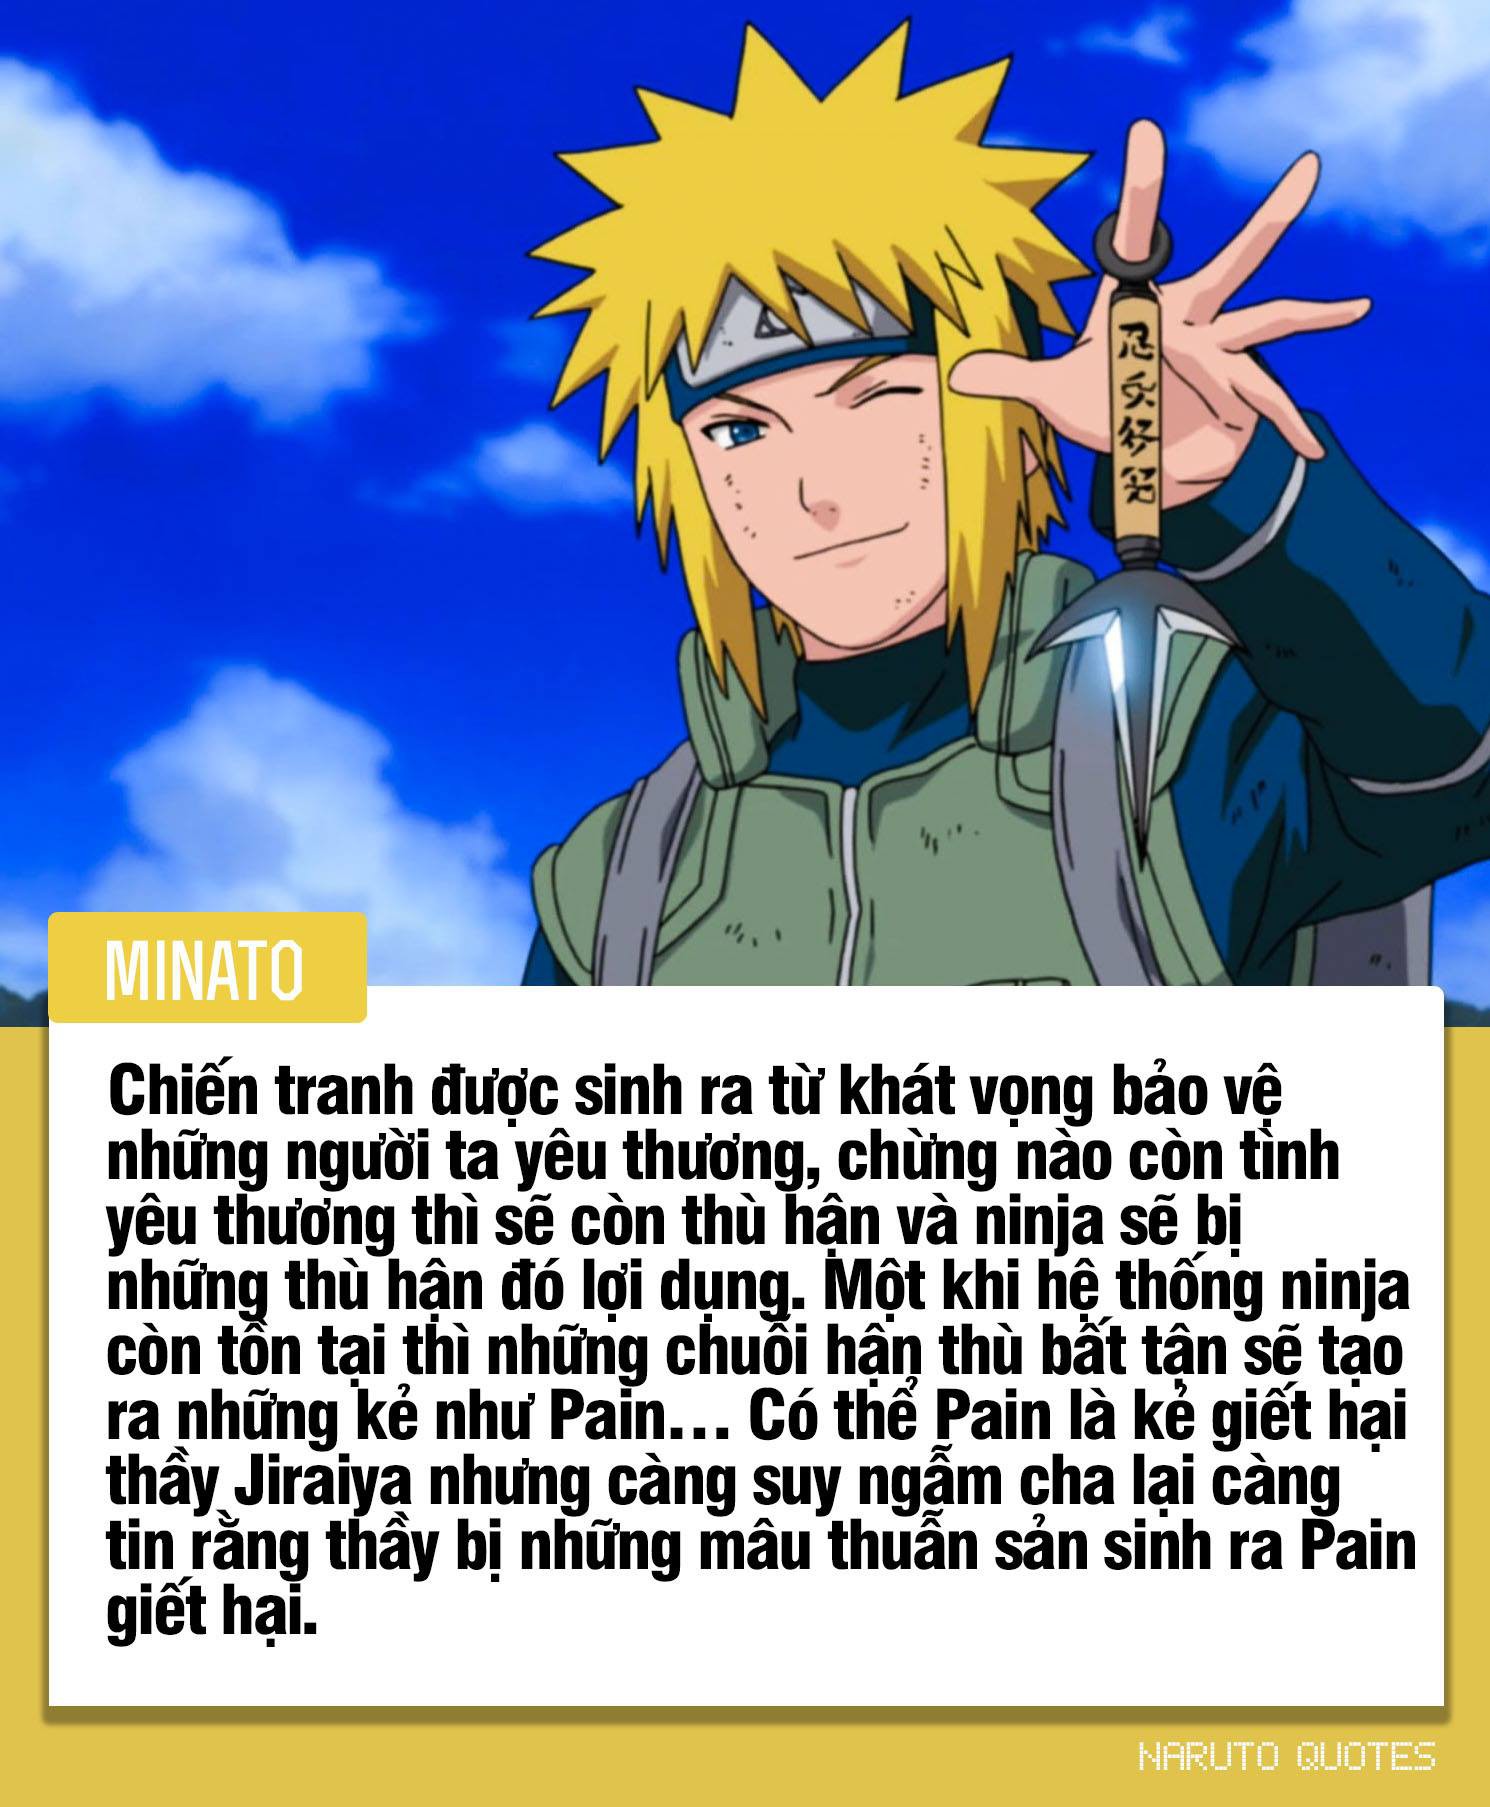 10 câu nói ý nghĩa của các nhân vật trong Naruto, câu thứ 3 sẽ là động lực giúp nhiều người phấn đấu - Ảnh 8.